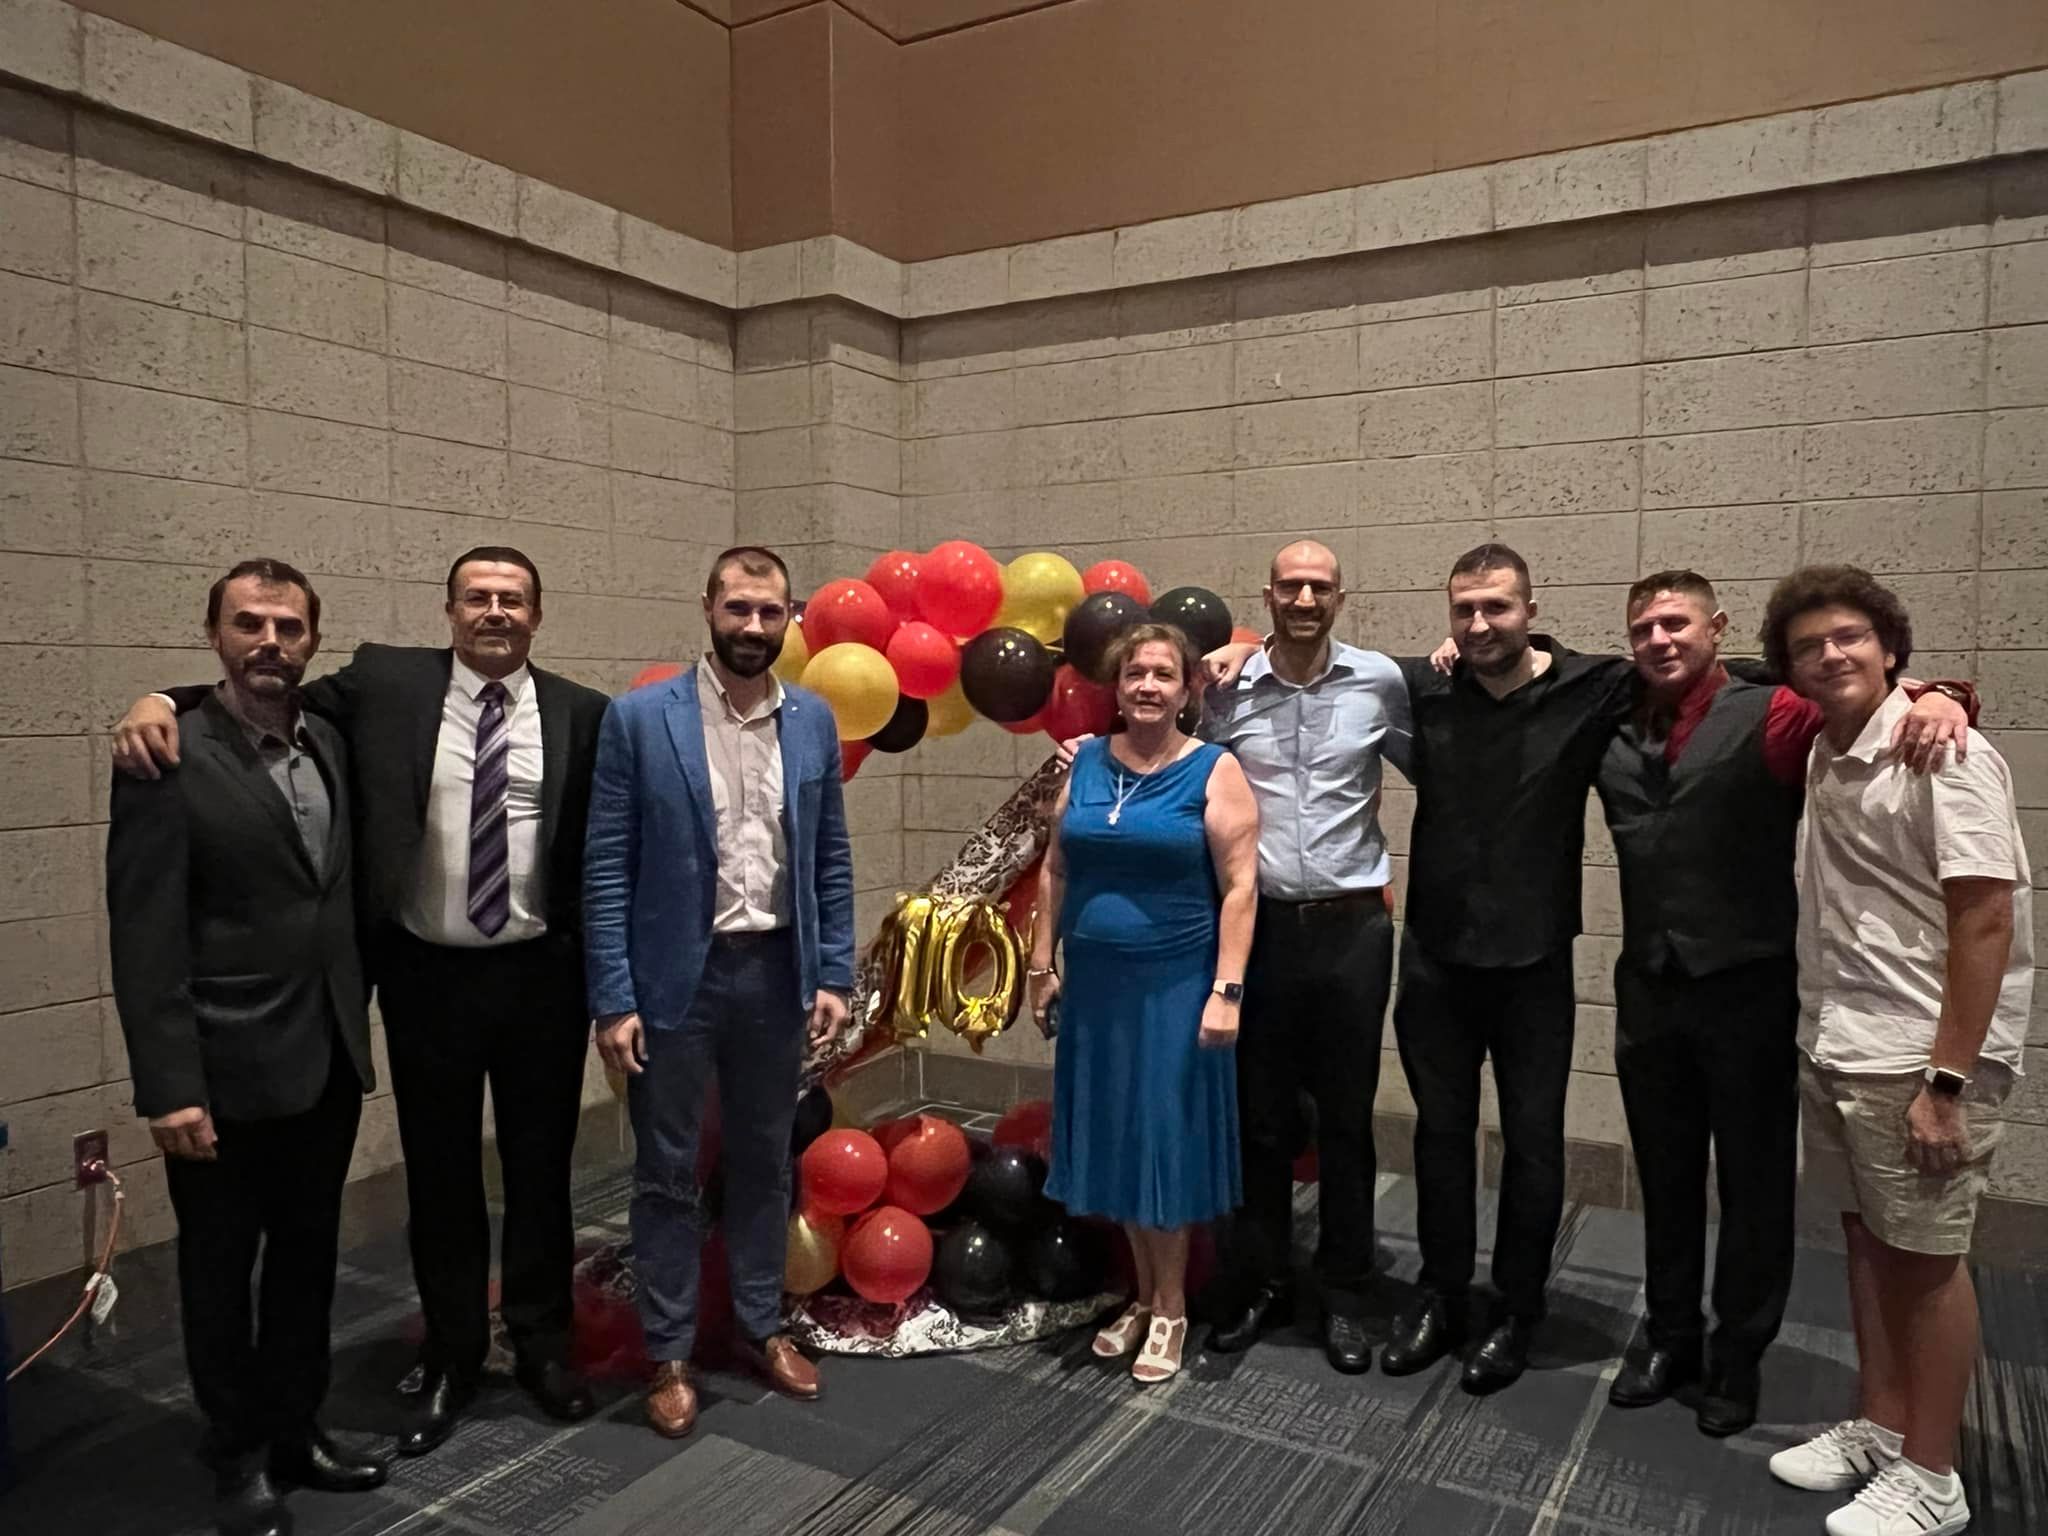 Македонската патриотична организация в САЩ и Канада отпразнува своята 100 годишнина във Форт Уейн, щата Индиана